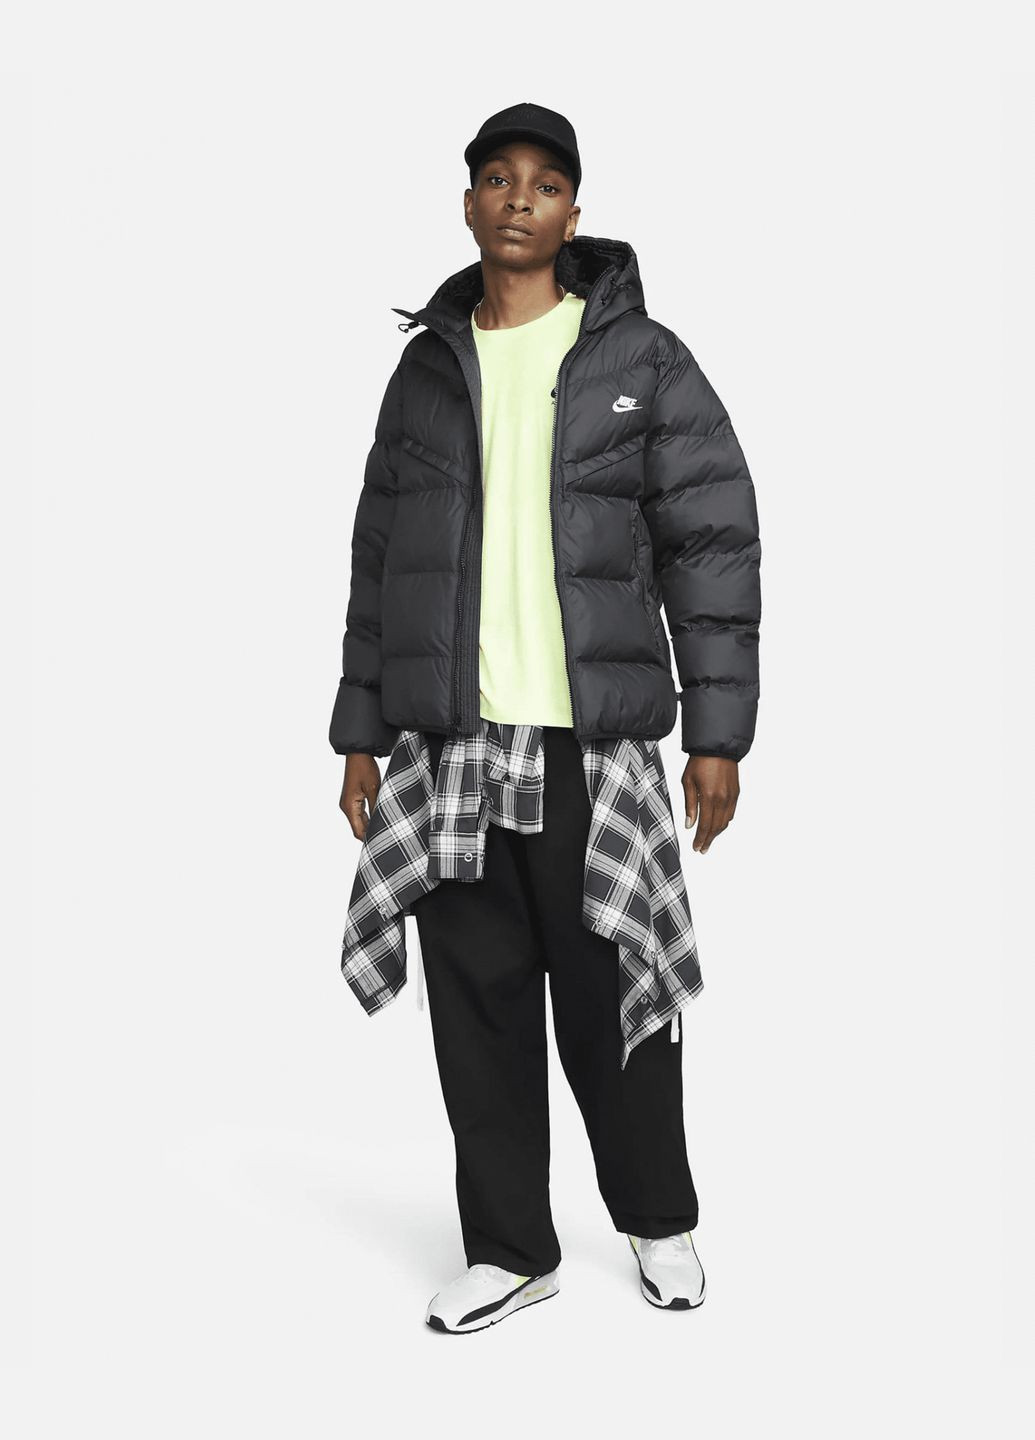 Черная демисезонная куртка мужская storm-fit windrunner primaloft fb8185-010 черная зима Nike